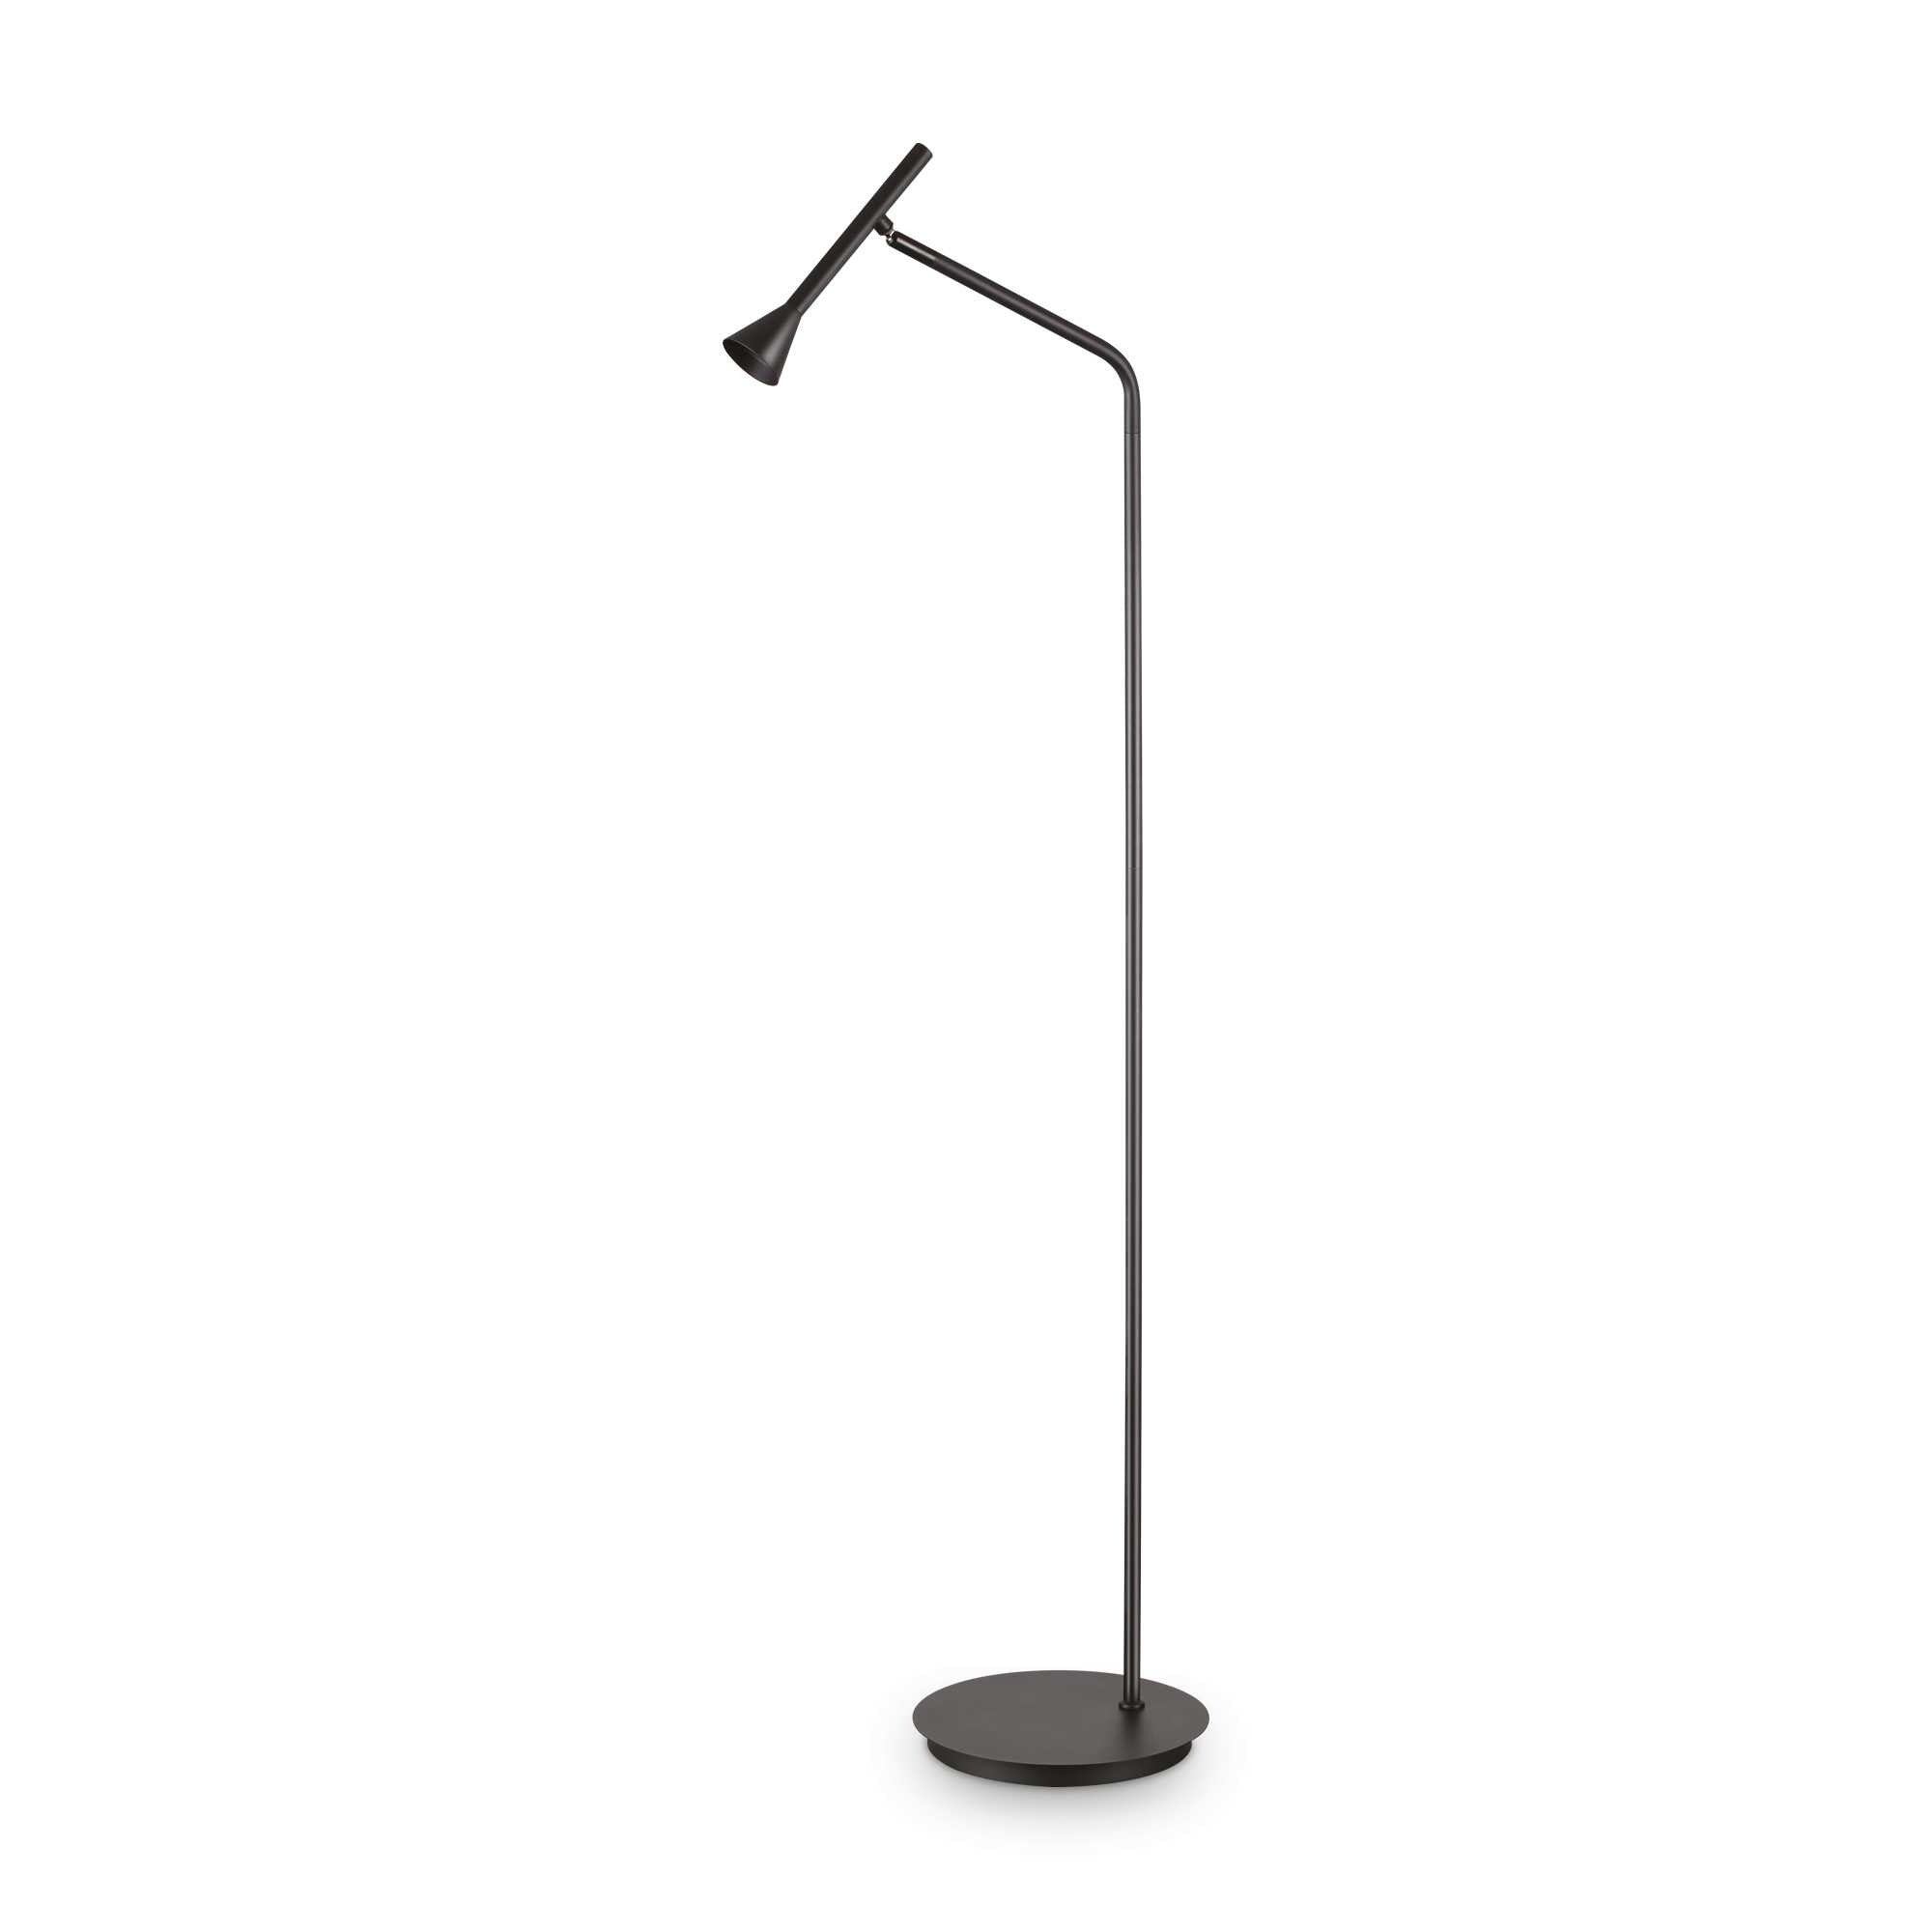 DIESIS - Minimalist design adjustable floor lamp